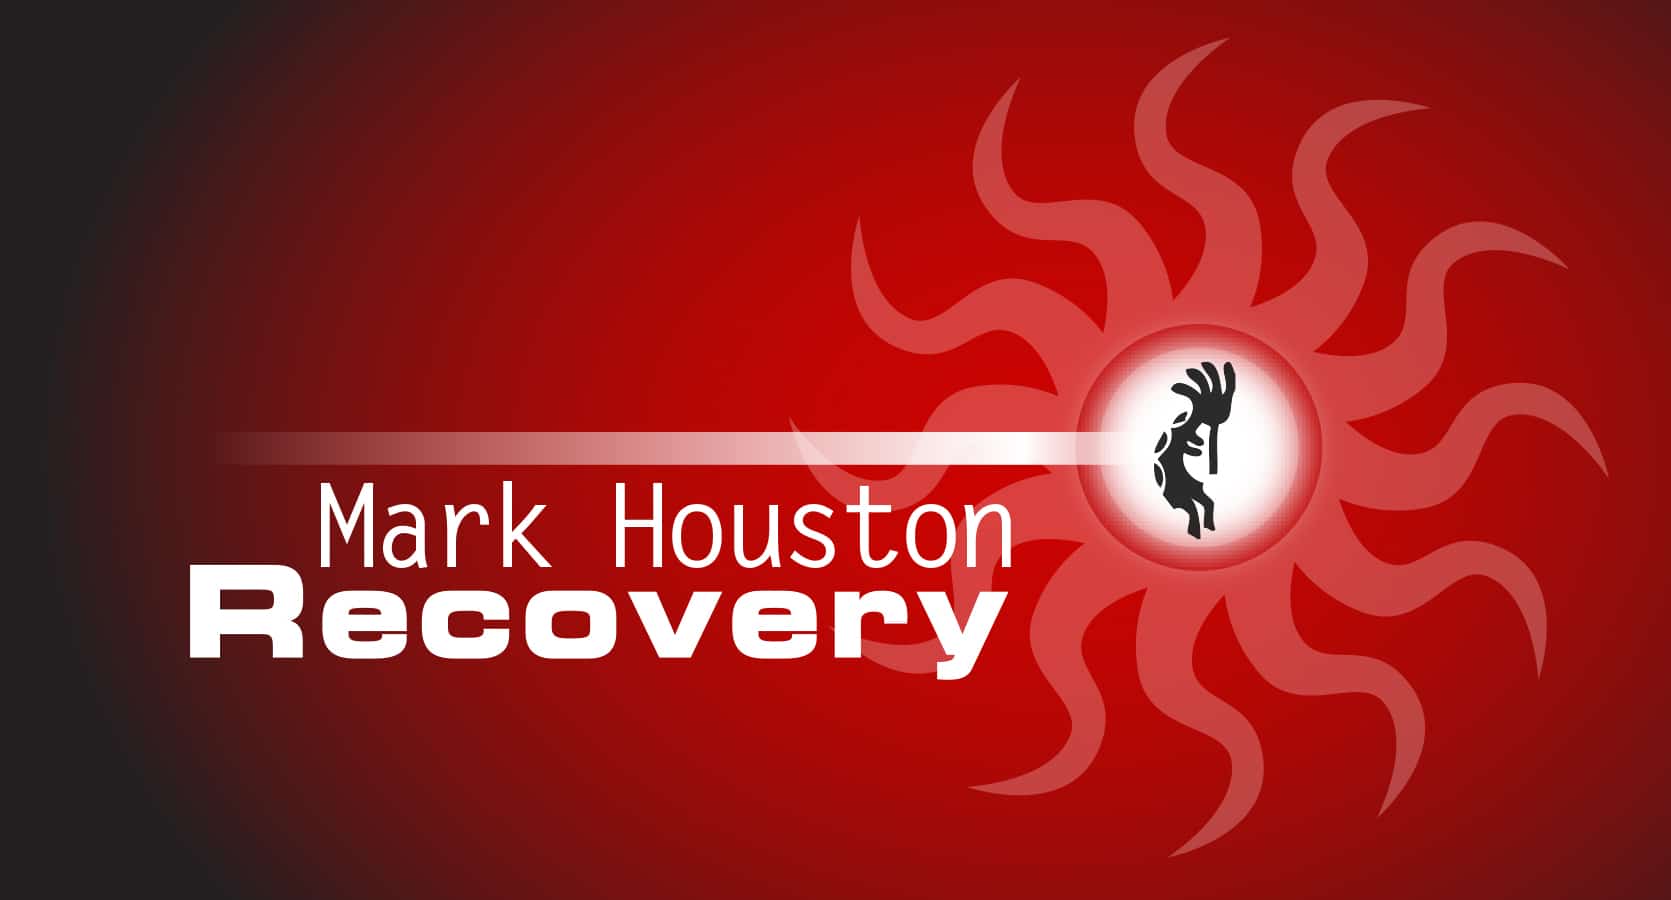 Mark Houston Recovery